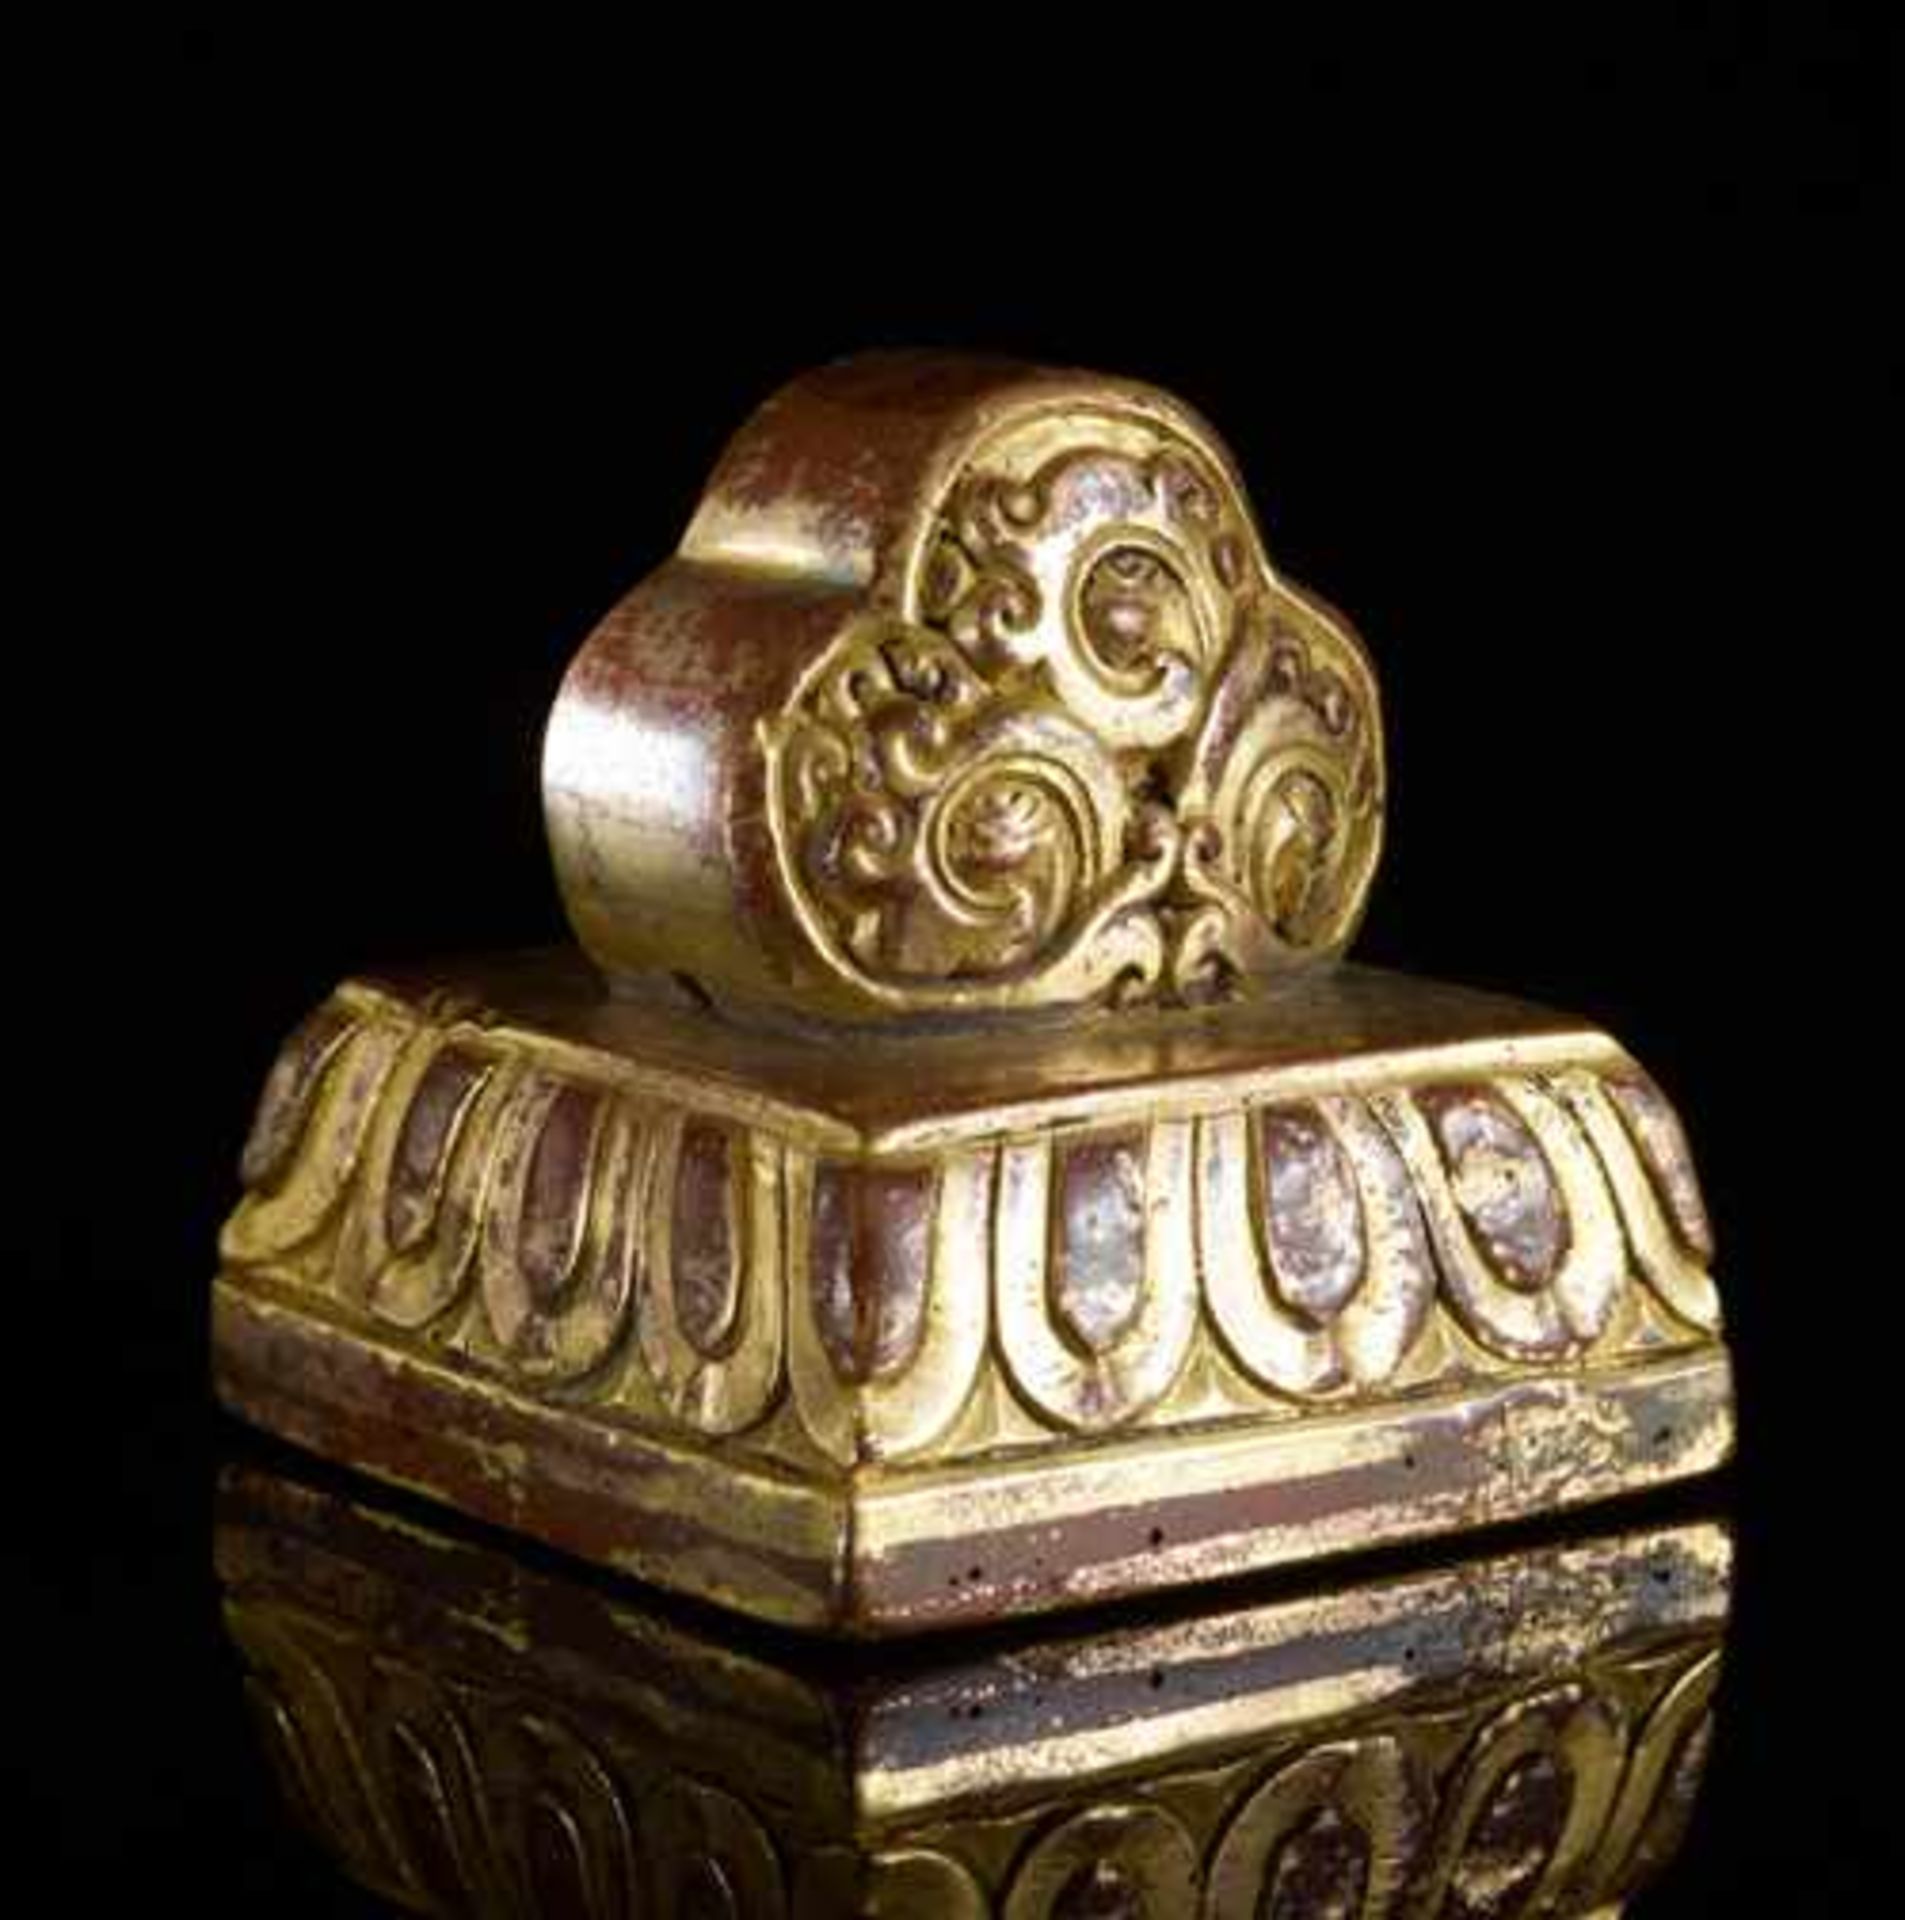 KALACAKRA-SIEGEL Bronze mit Vergoldung. Sinotibetisch, Qing-Dynastie, 18. – 19. Jh. Ein